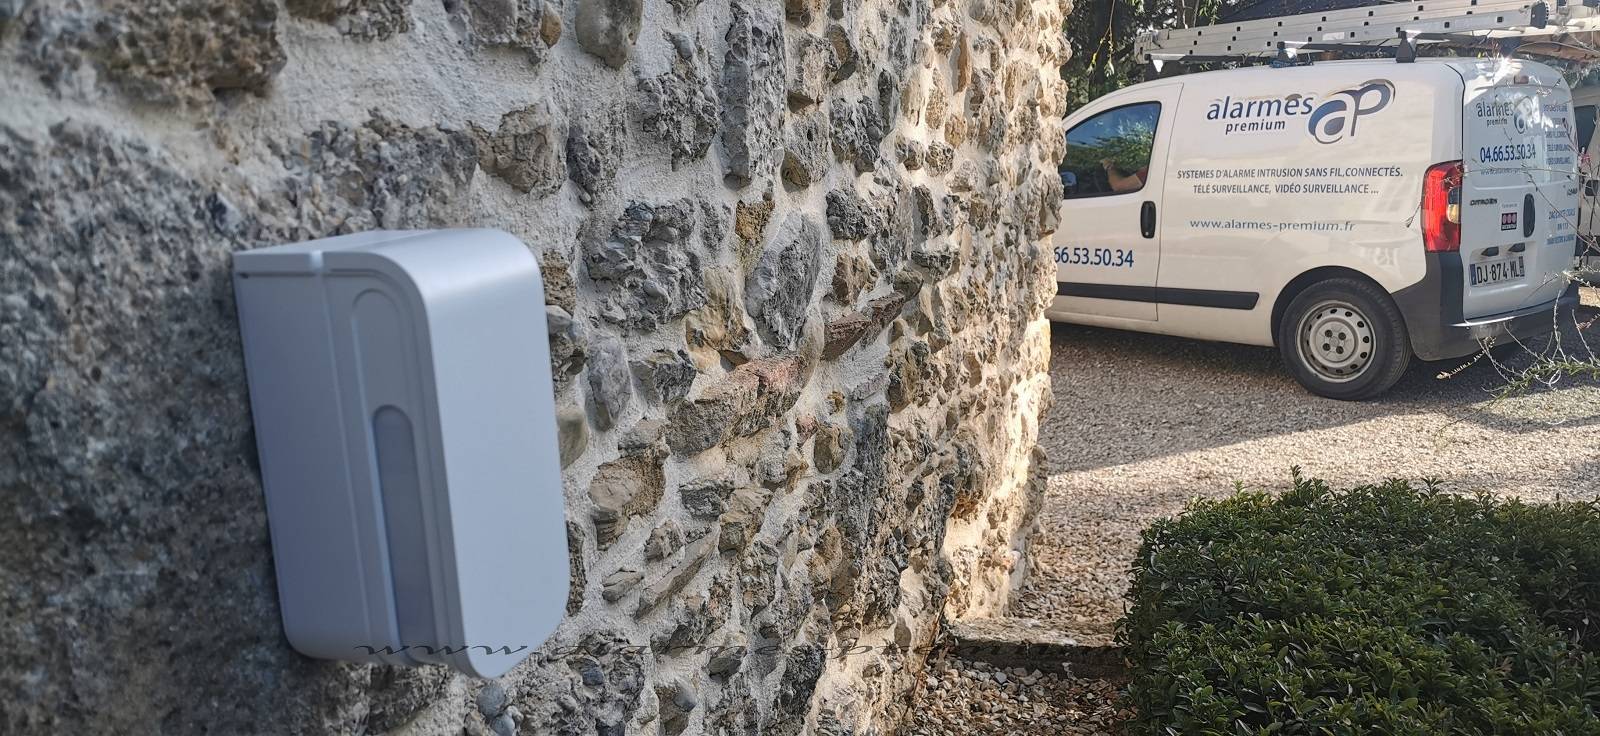 Faire installer une alarme pour une résidence secondaire dans le Gard